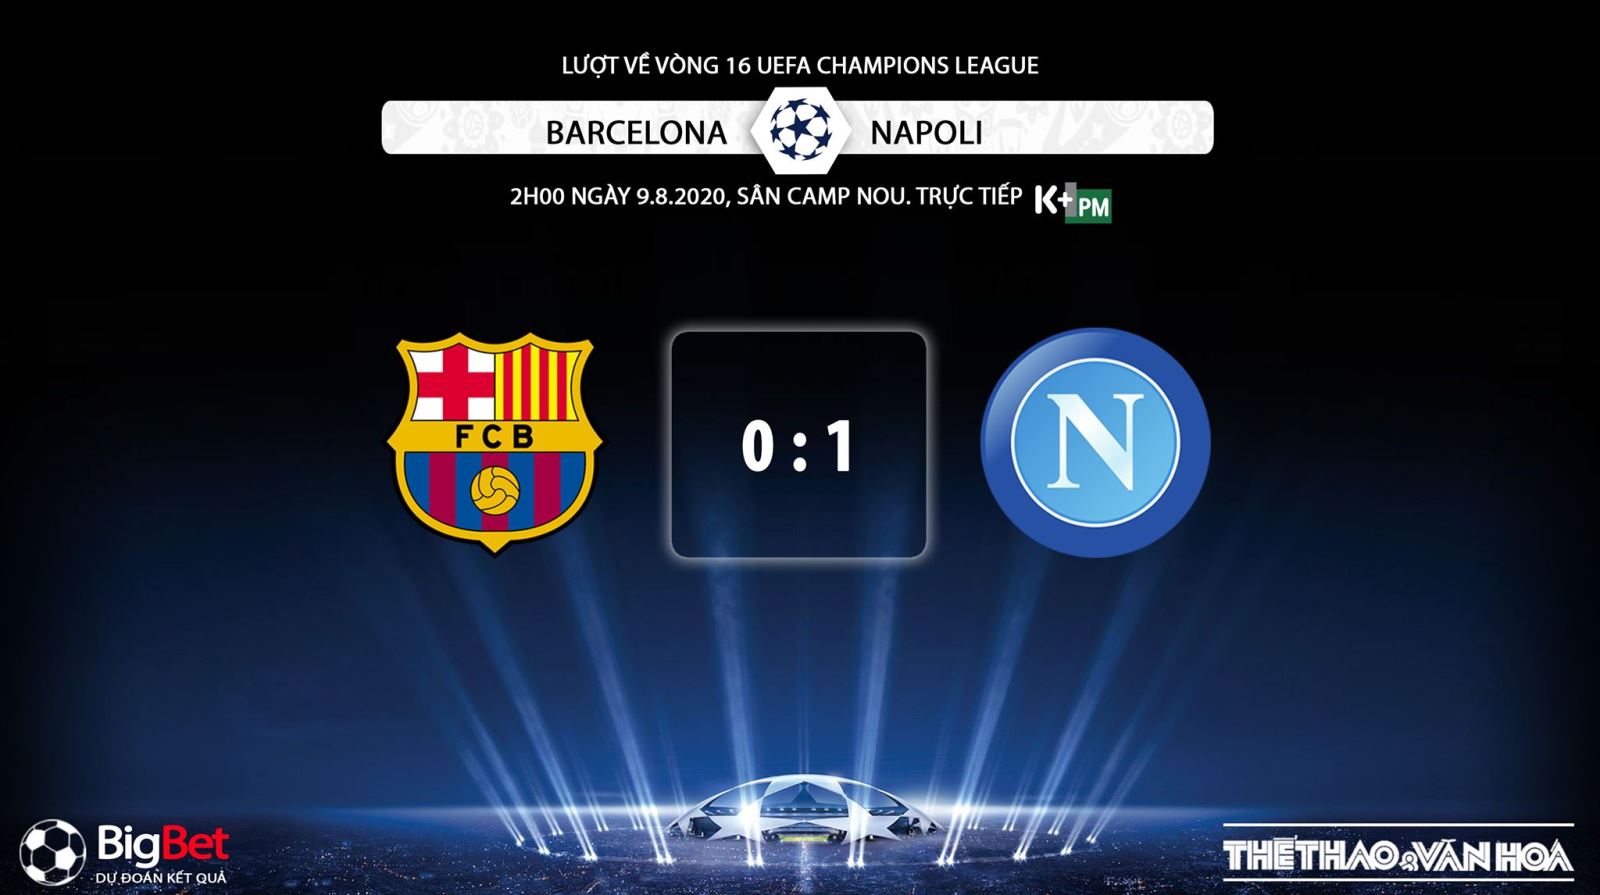 Barcelona vs Napoli, Barcelona, Napoli, trực tiếp bóng đá, trực tiếp Barcelona vs Napoli, lịch thi đấu bóng đá, nhận định bóng đá, kèo bóng đá